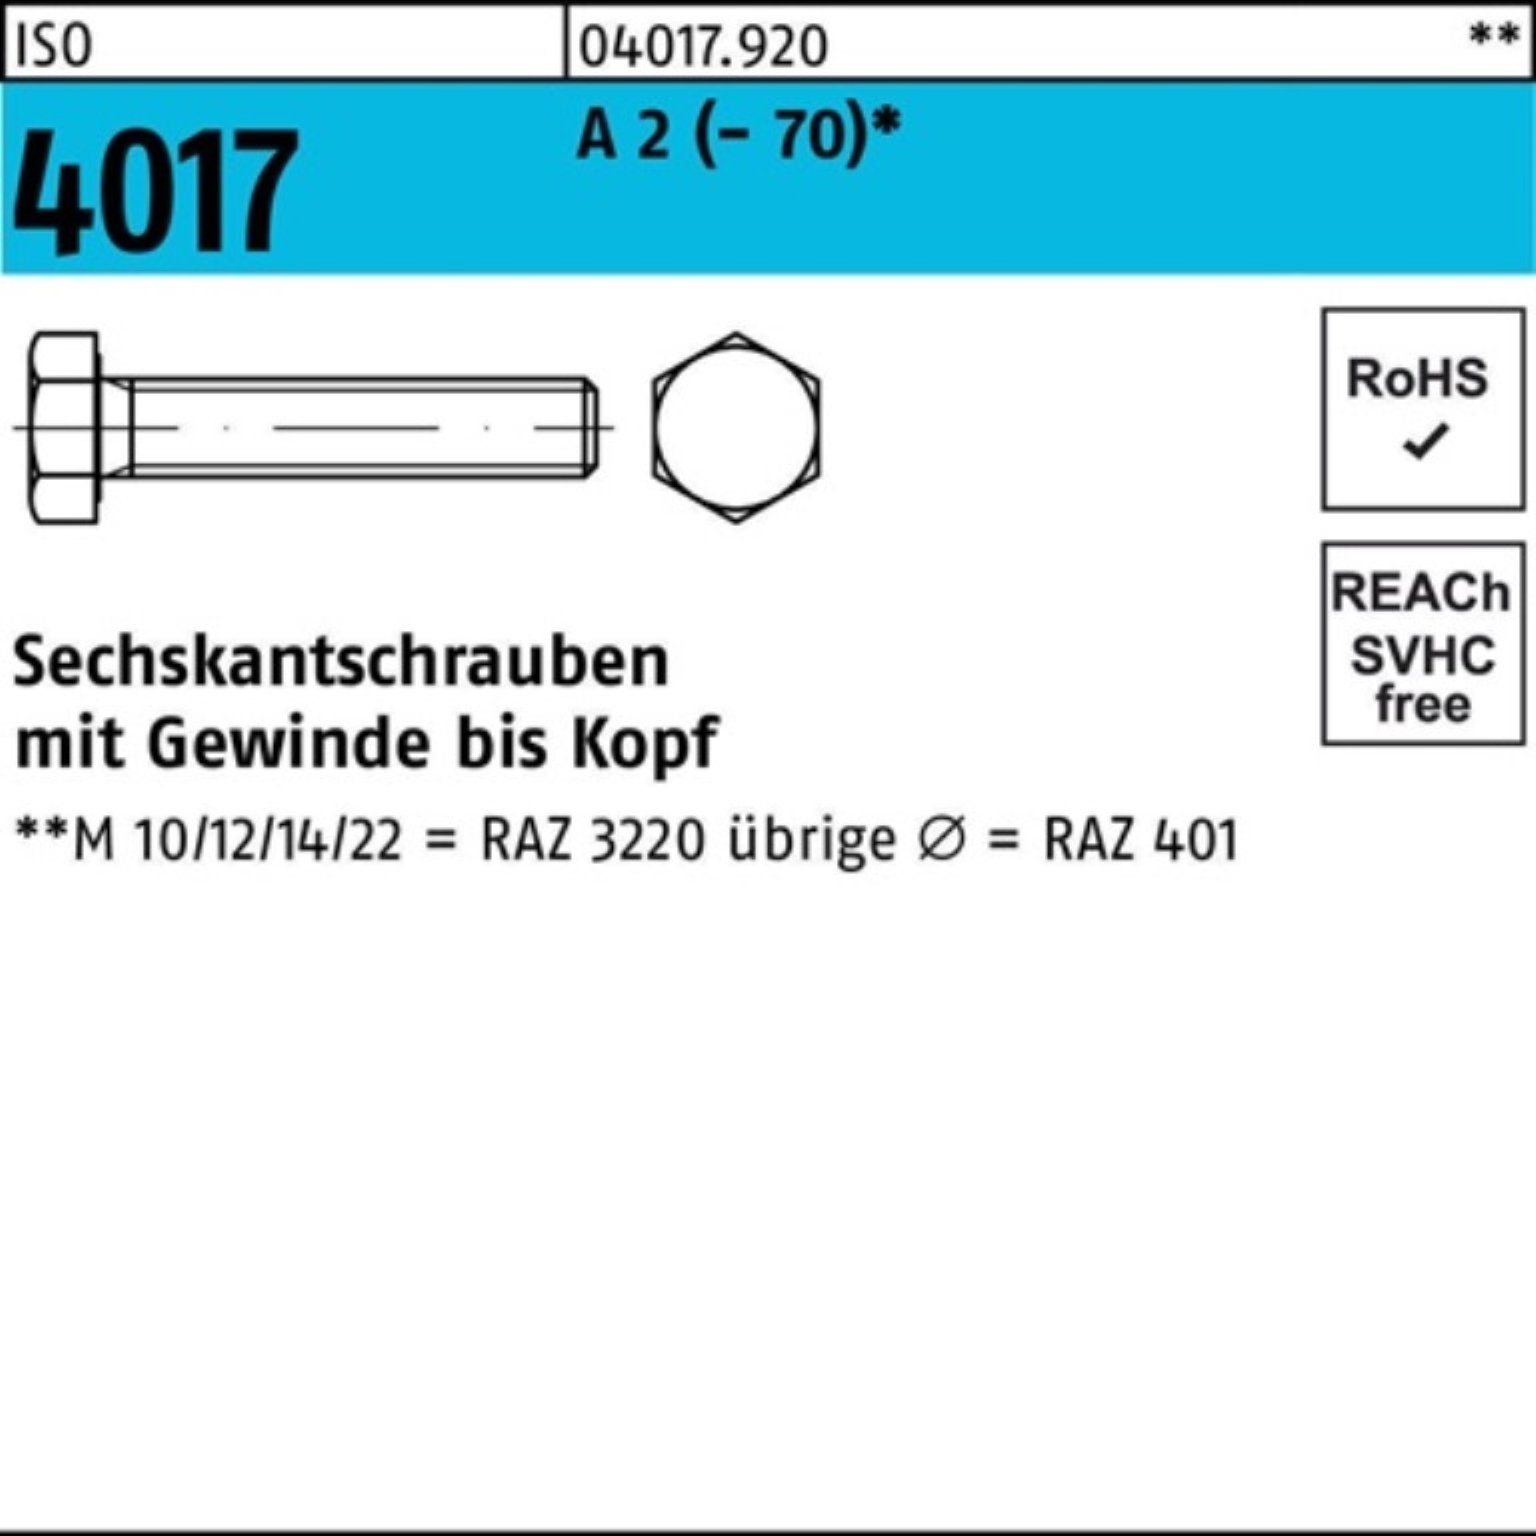 Pack Sechskantschraube 4017 100er 100 ISO 40 A VG 2 Stück (70) Sechskantschraube Bufab M8x